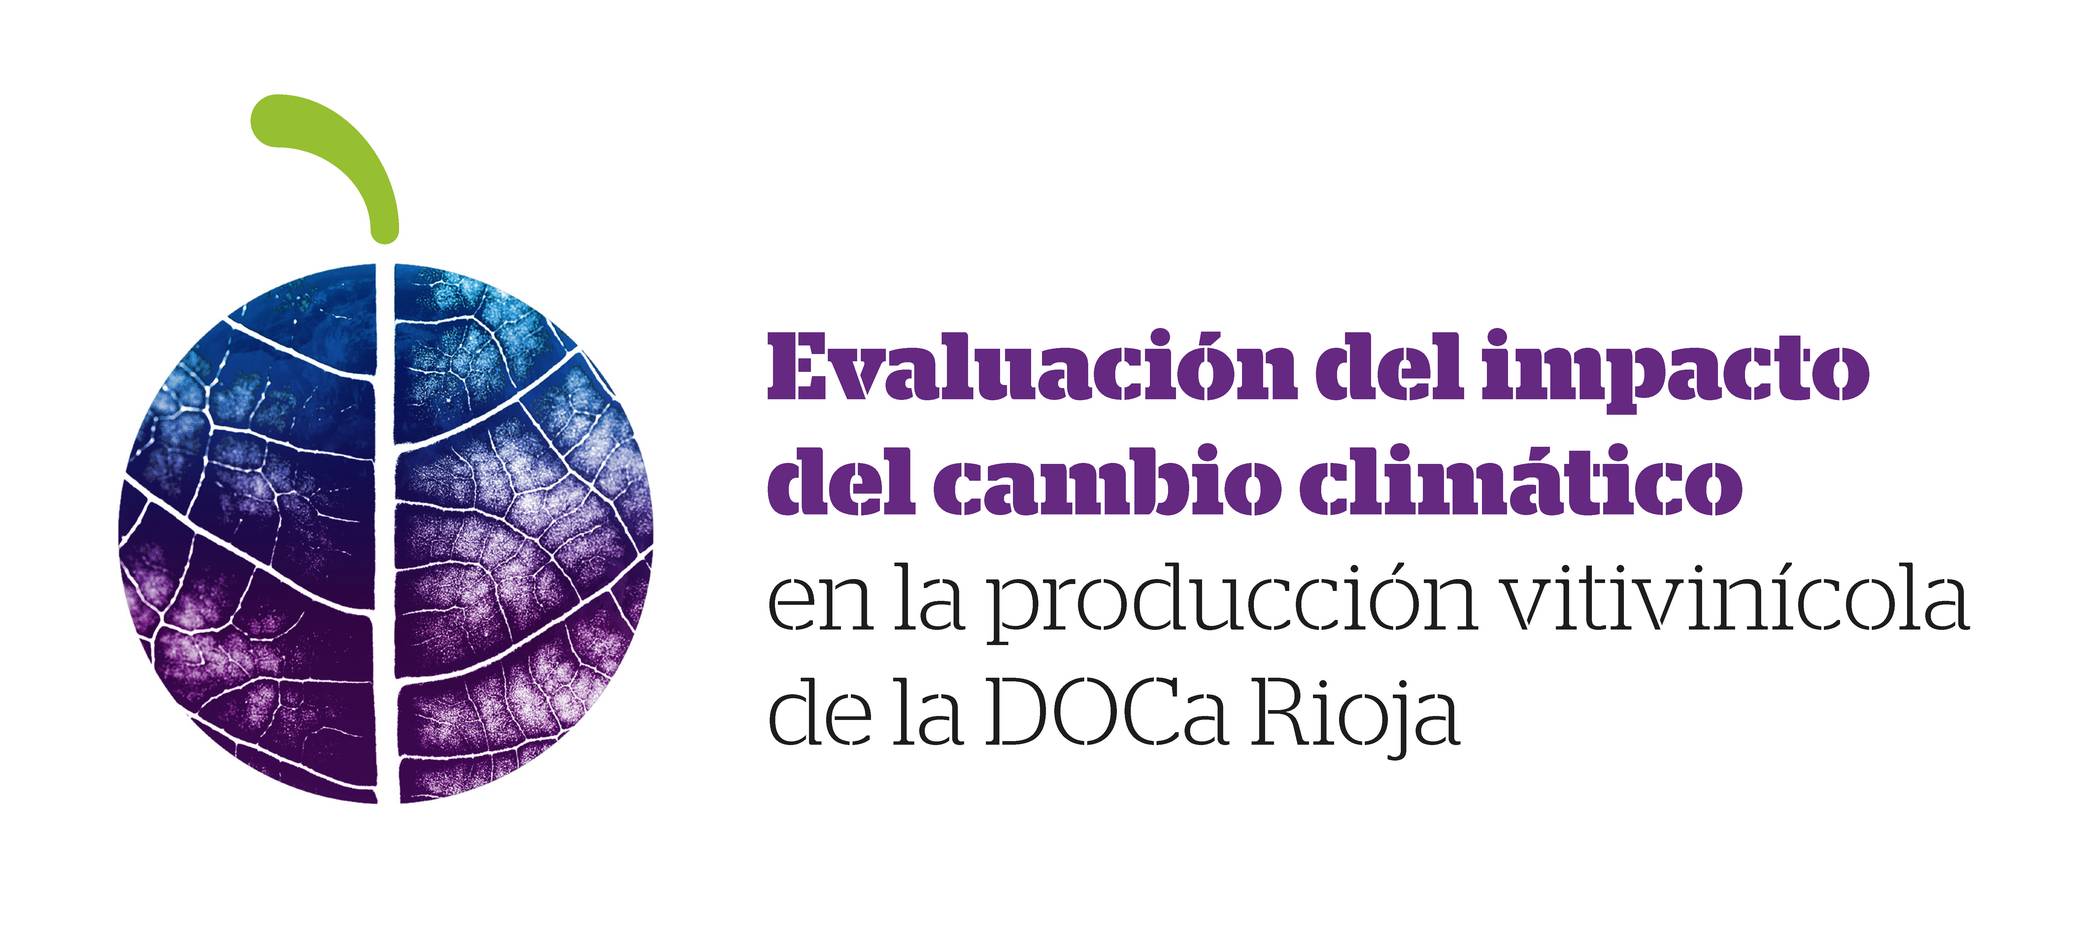 Evaluación del impacto del cambio climático en la DOCa Rioja